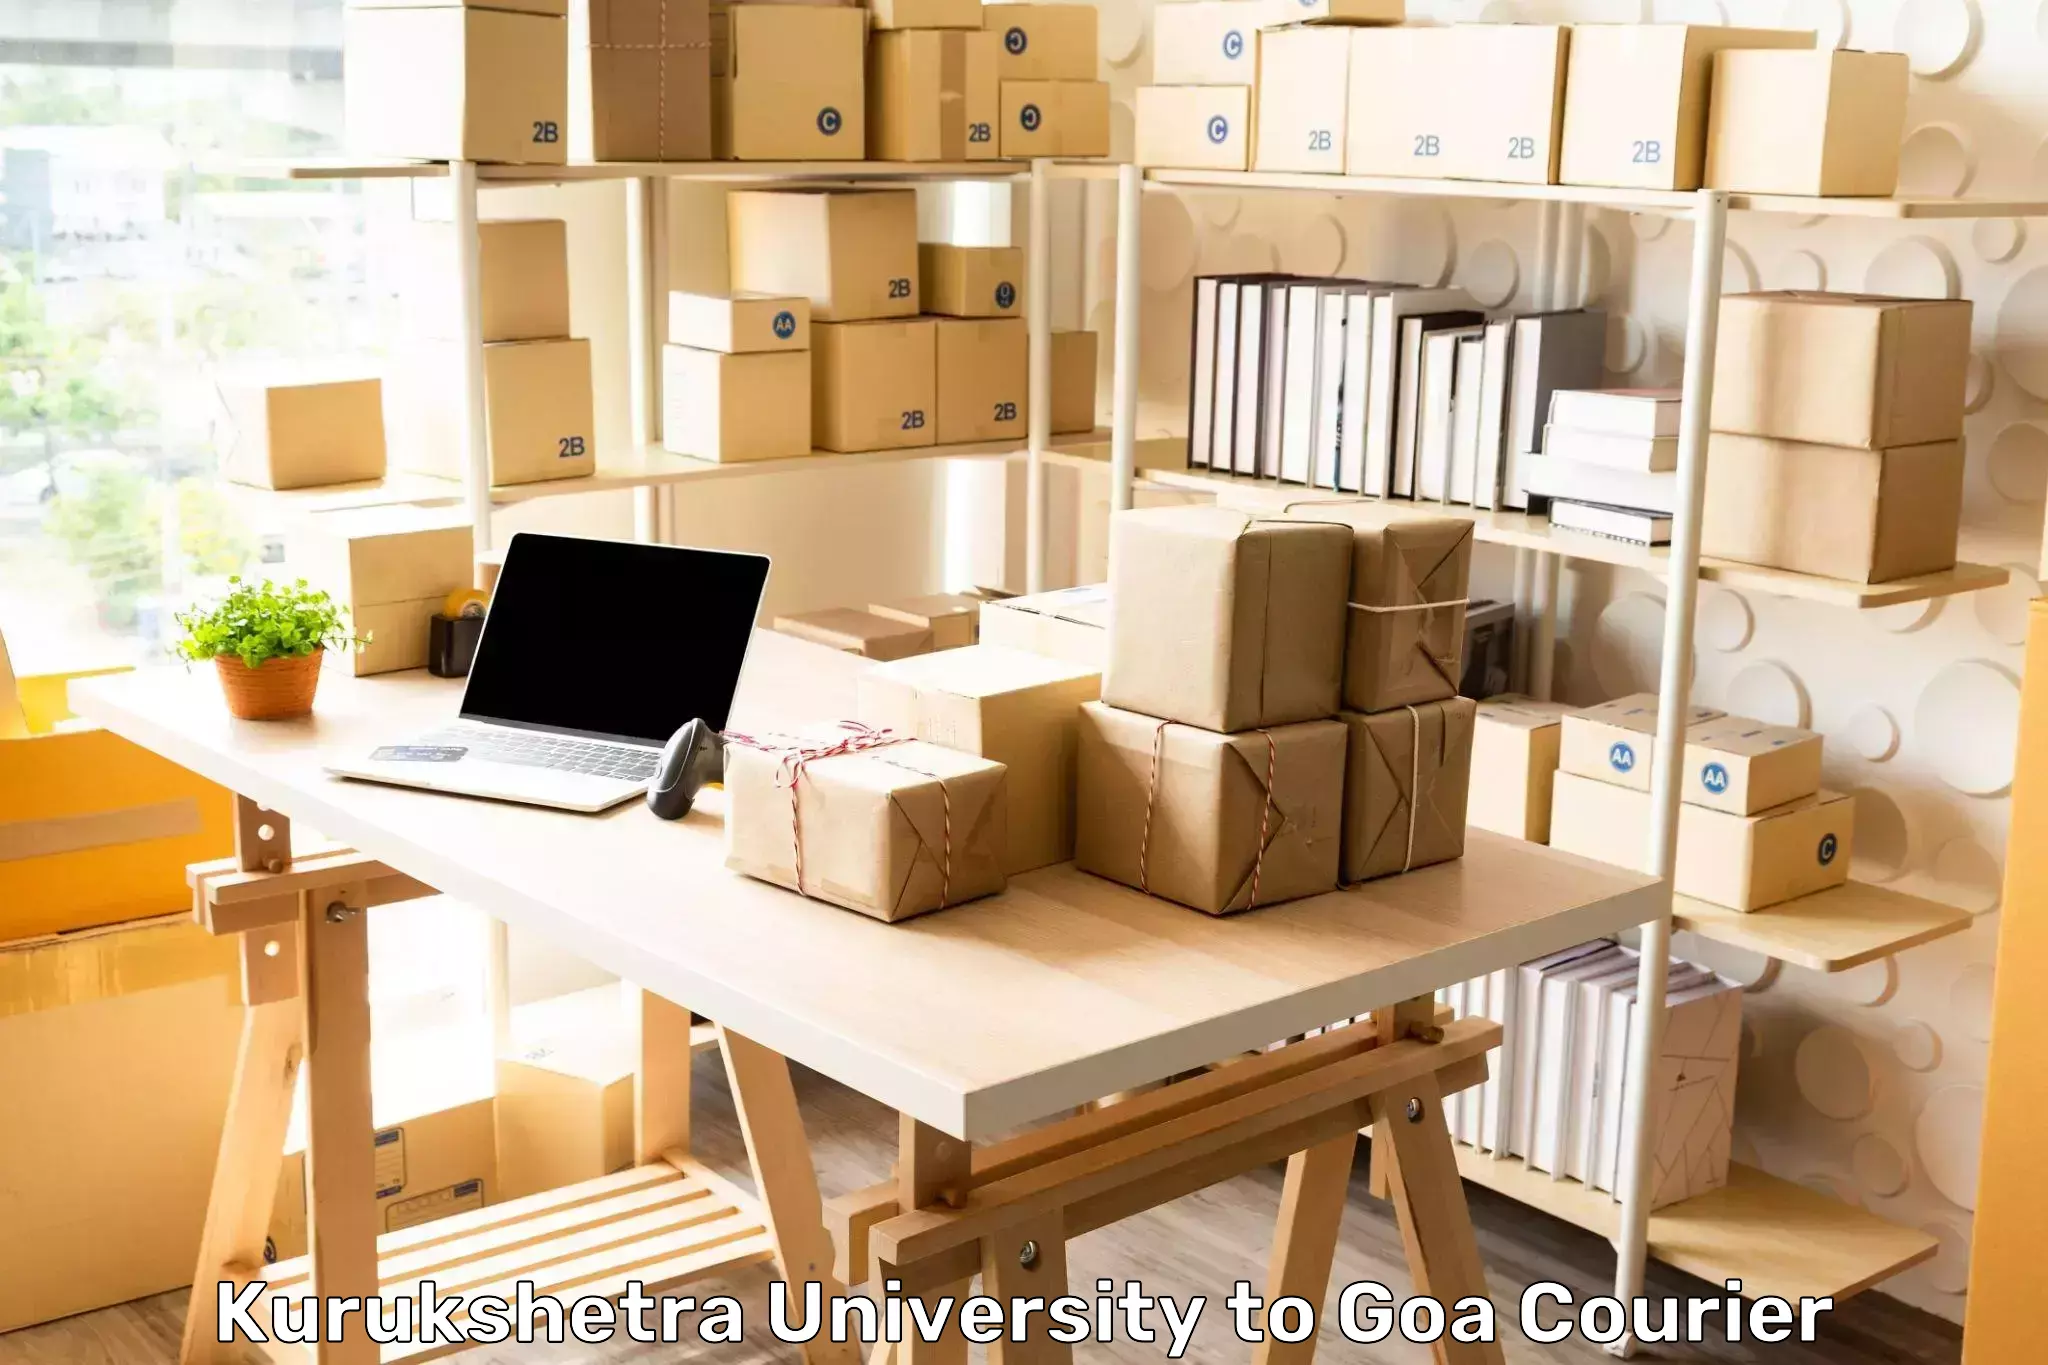 Professional parcel services Kurukshetra University to Panaji